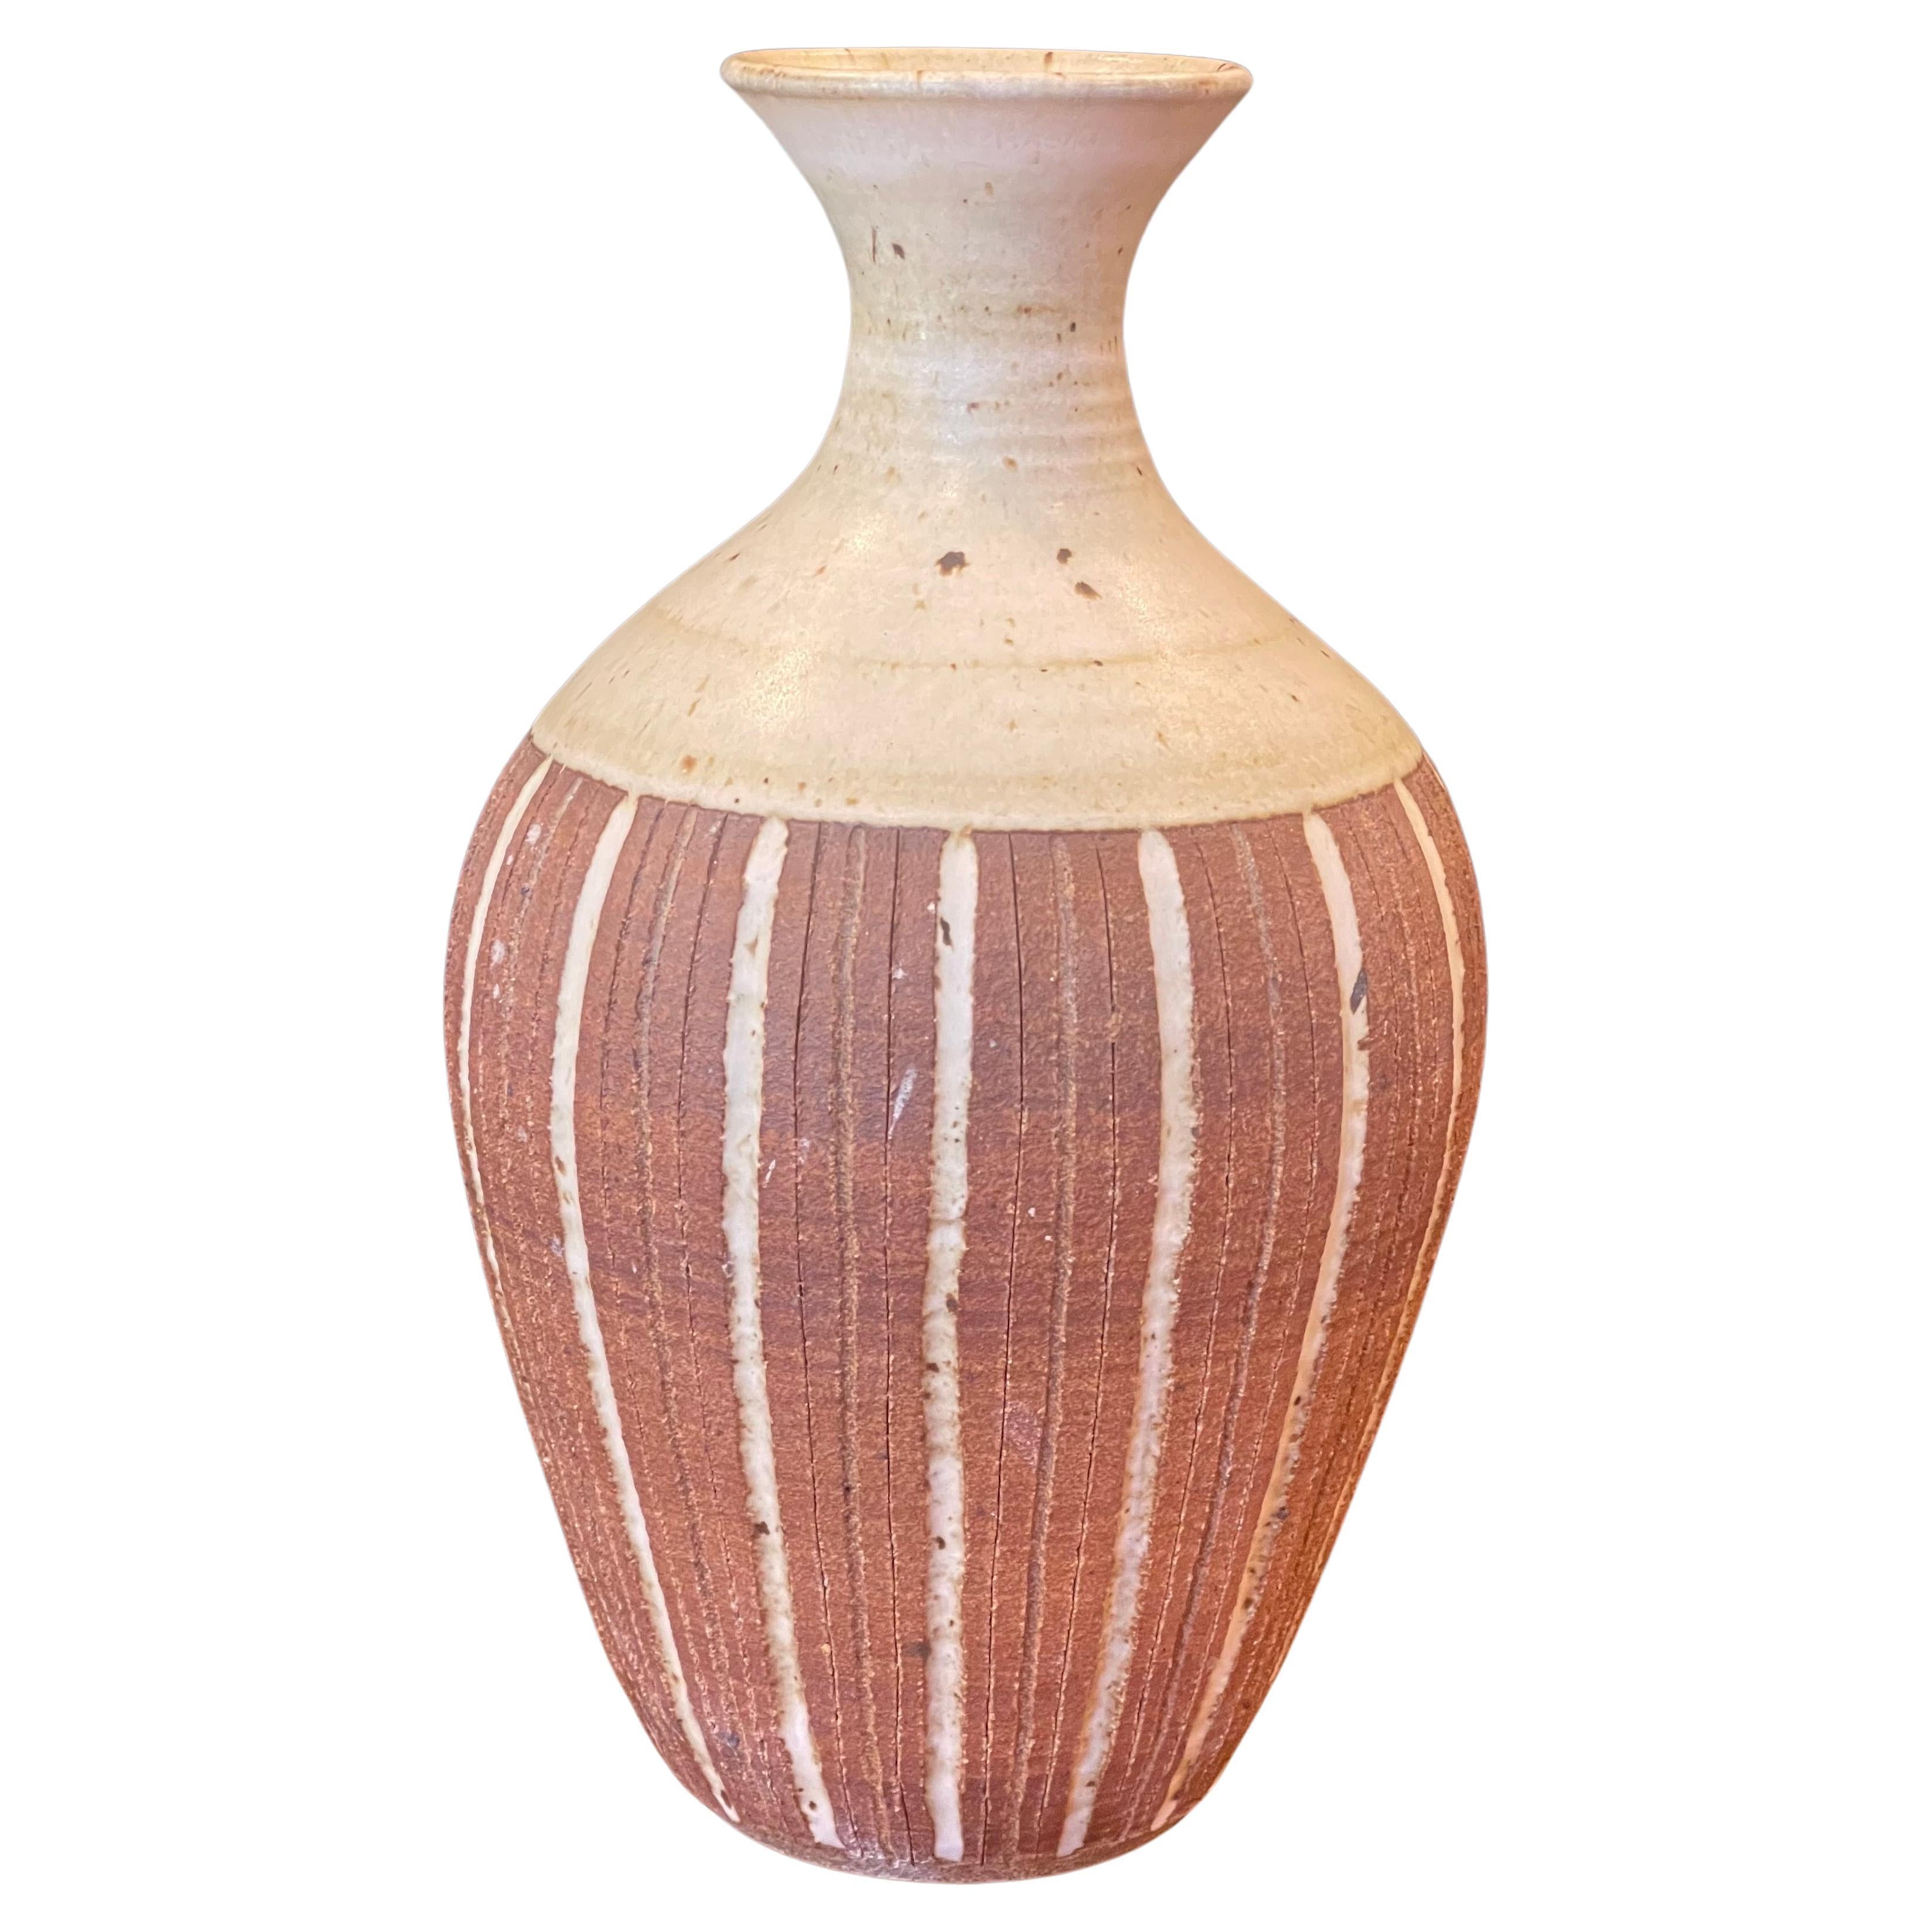 Un très joli vase en grès de Californie, réalisé par l'artiste Barbara Moorehead de San Diego, vers les années 1970, dans des tons terreux marron et beige. Le récipient est en bon état vintage, à l'exception d'un petit éclat sur le bord (voir